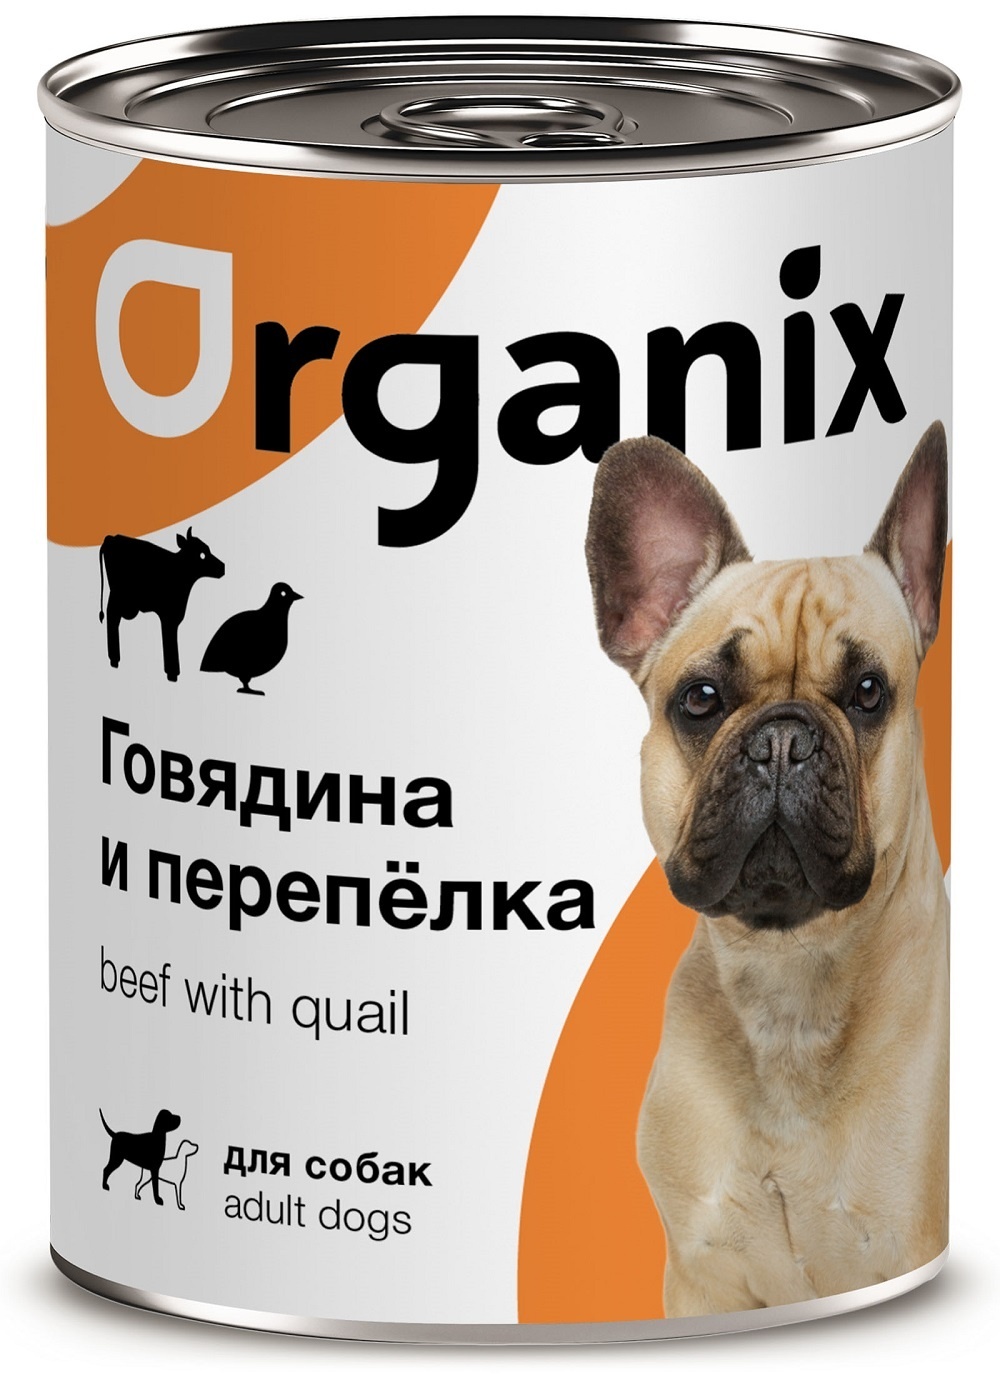 Organix консервы Organix консервы для собак, с говядиной и перепелкой (410 г) organix консервы organix консервы с говядиной и рубцом для собак 750 г